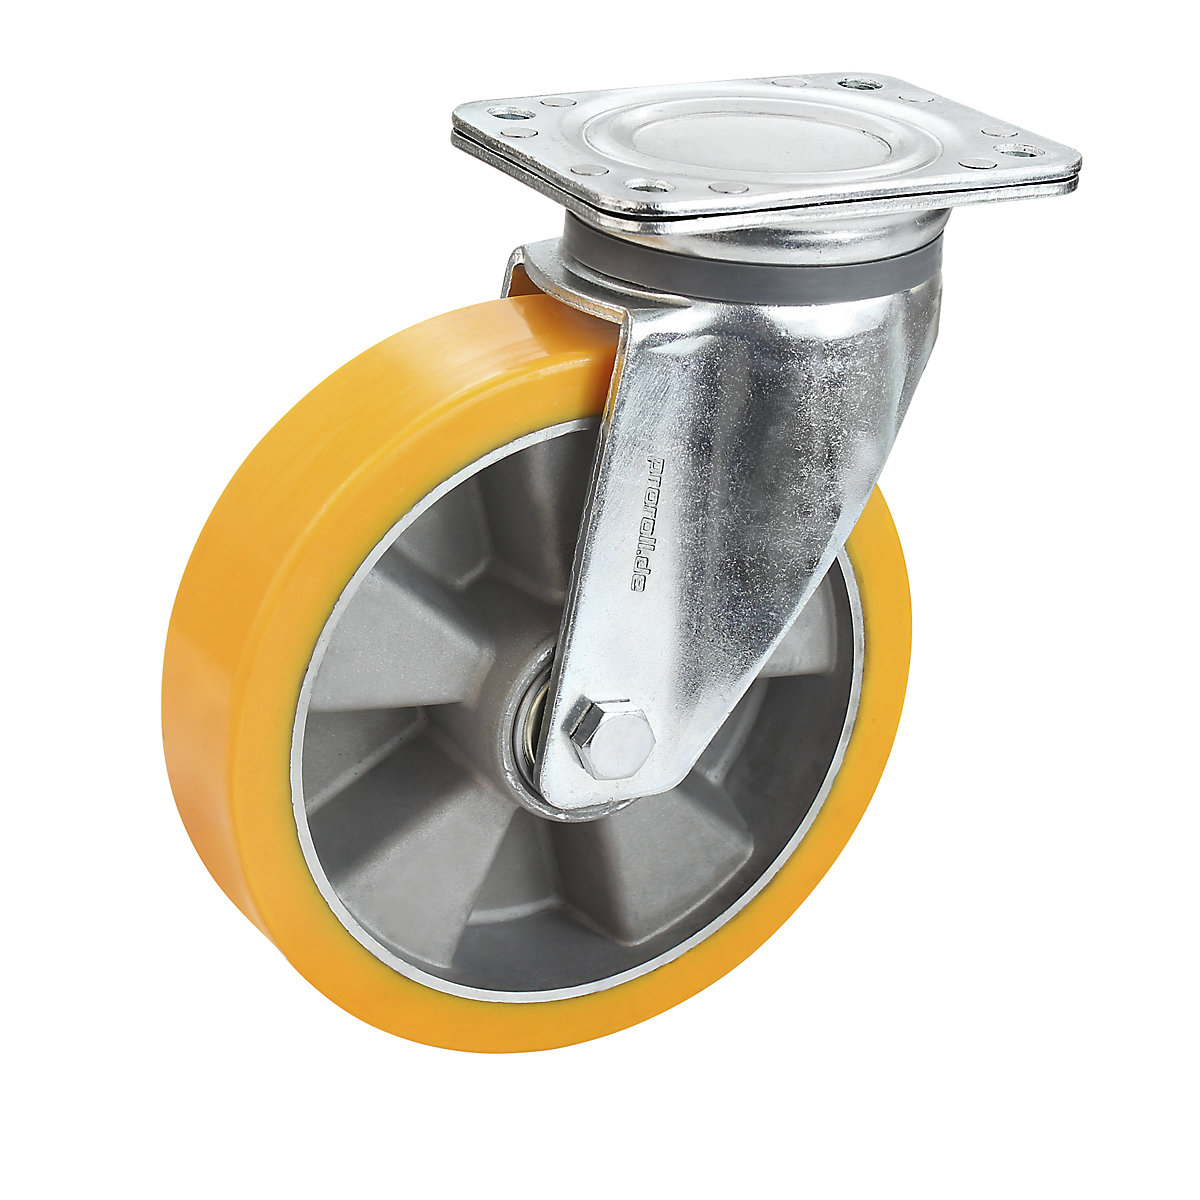 Obruč z PU na hliníkovom disku – Proroll, Ø x šírka kolesa 100 x 40 mm, otočné koliesko-6